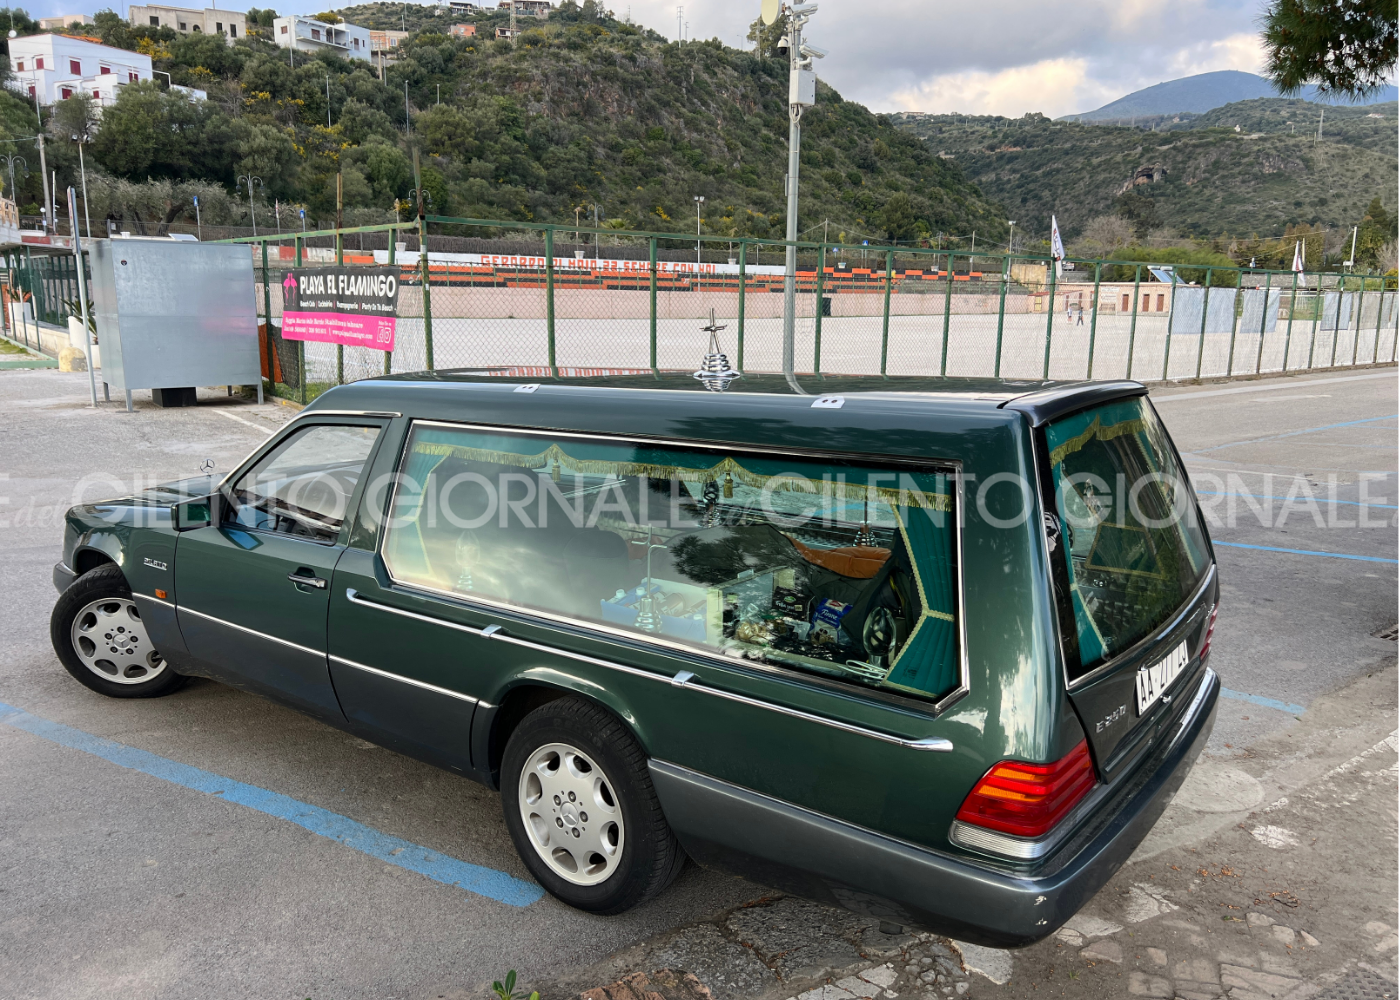 Camerota, dorme nel carro funebre: lo ha comprato in Calabria